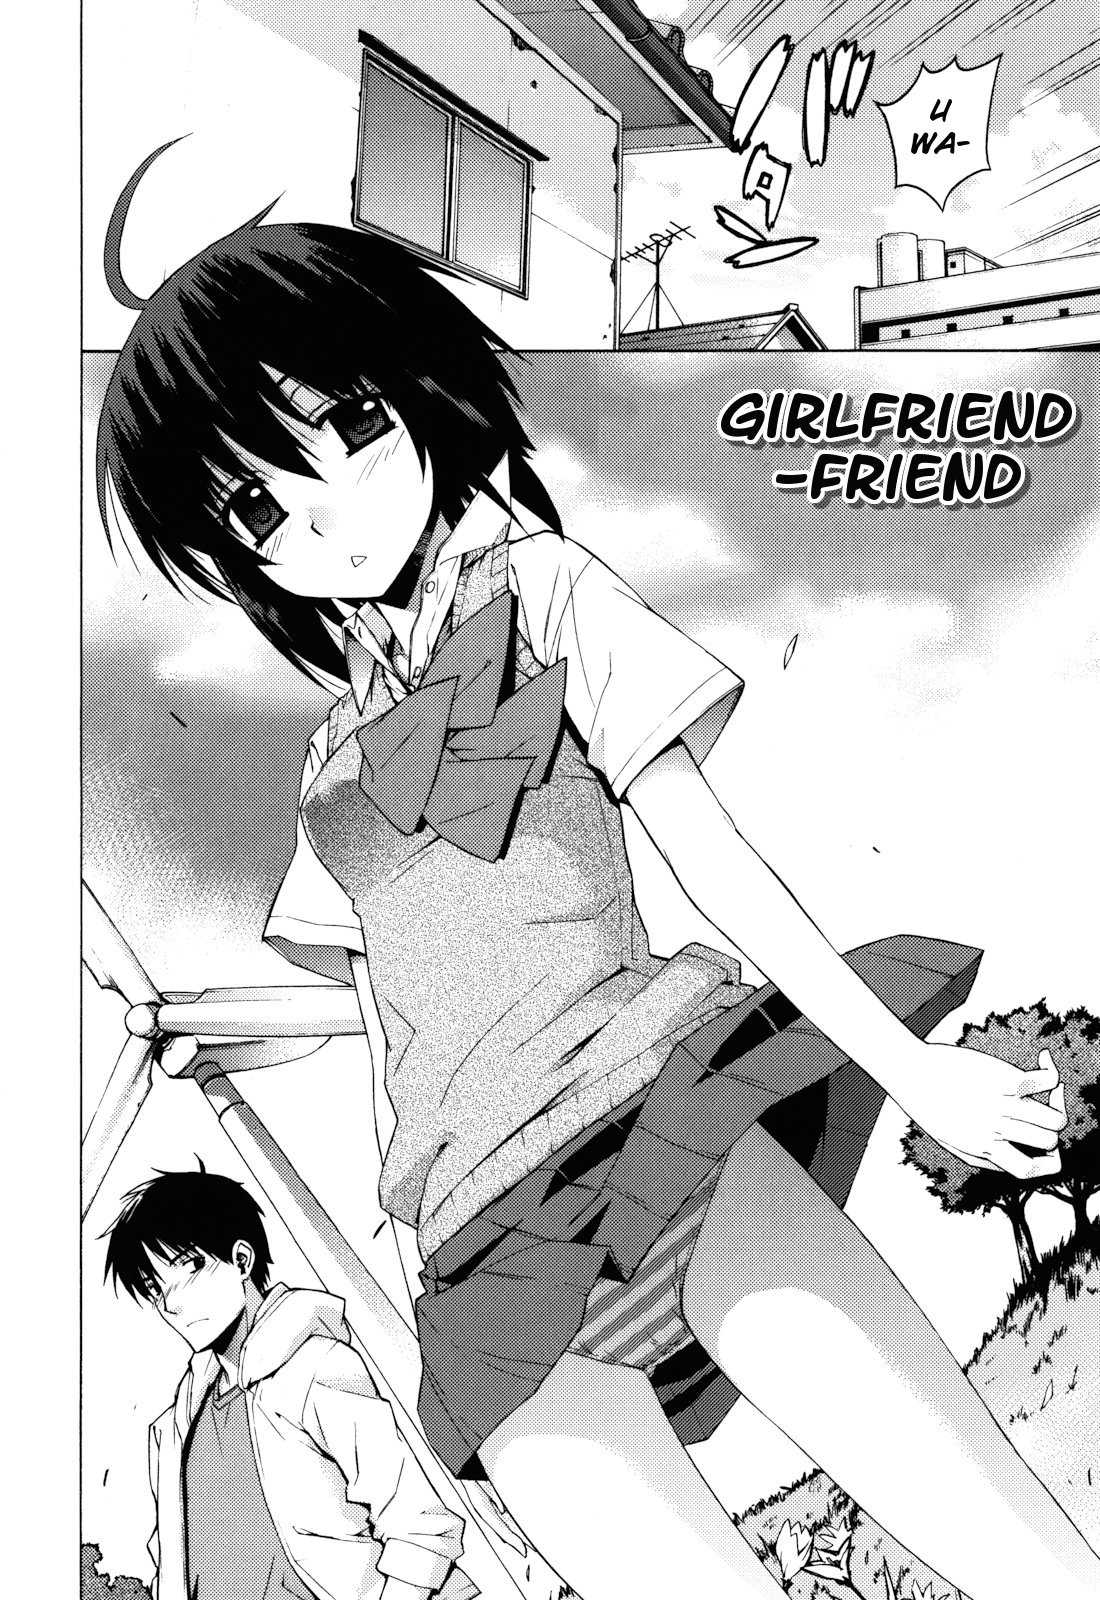 [Yaya Hinata] Girlfriend-Friend (Kanojo Friend) [English] (by MumeiTL) 